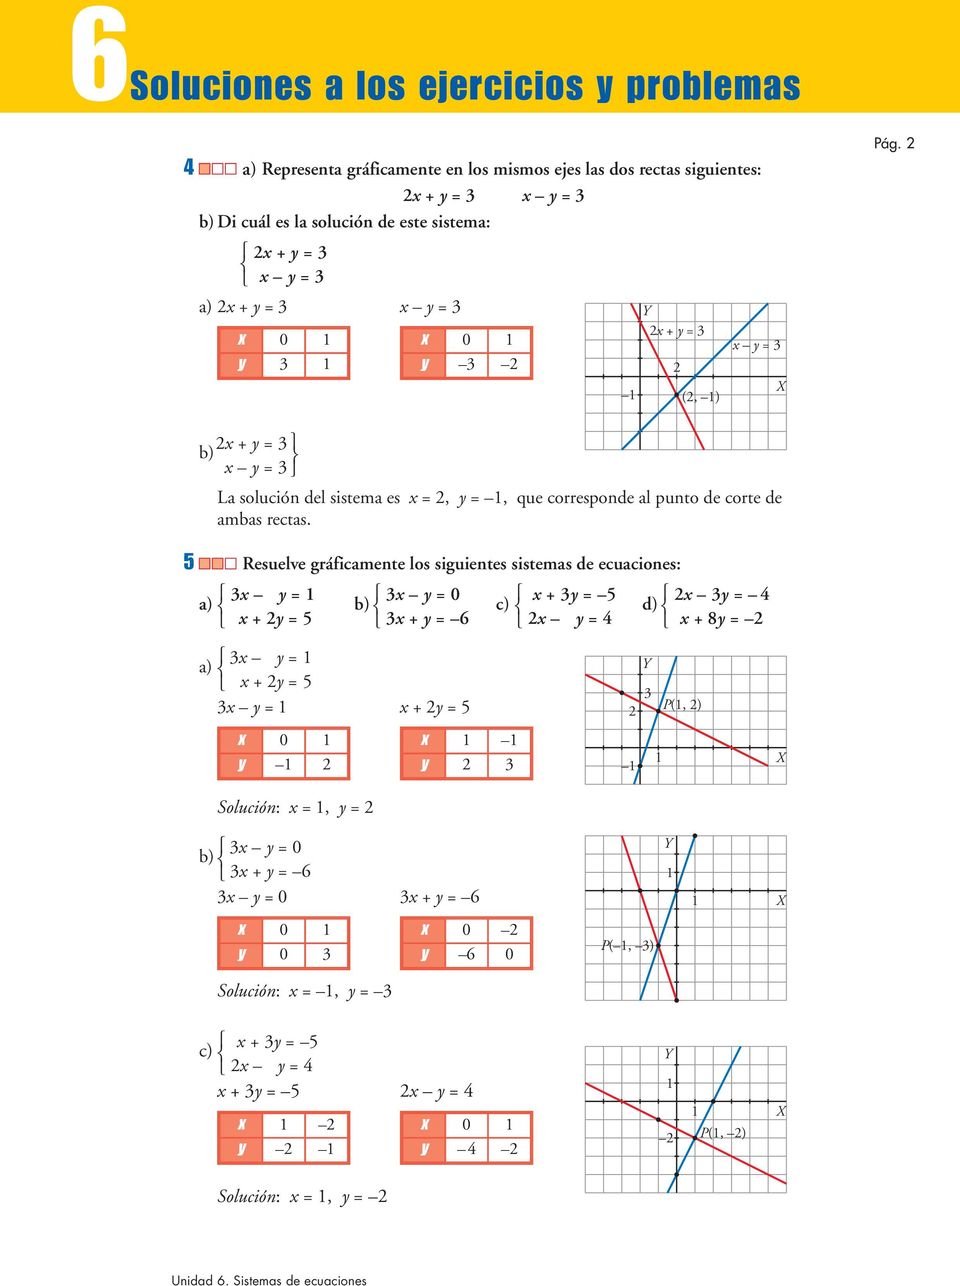 5 Resuelve gráficamente los siguientes sistemas de ecuaciones: 3x y = 3x y = 0 x + 3y = 5 x 3y = 4 a) b) c) d) x +y = 5 3x + y = 6 x y = 4 x +y = 3x y = a) x +y = 5 3x y = x +y = 5 x